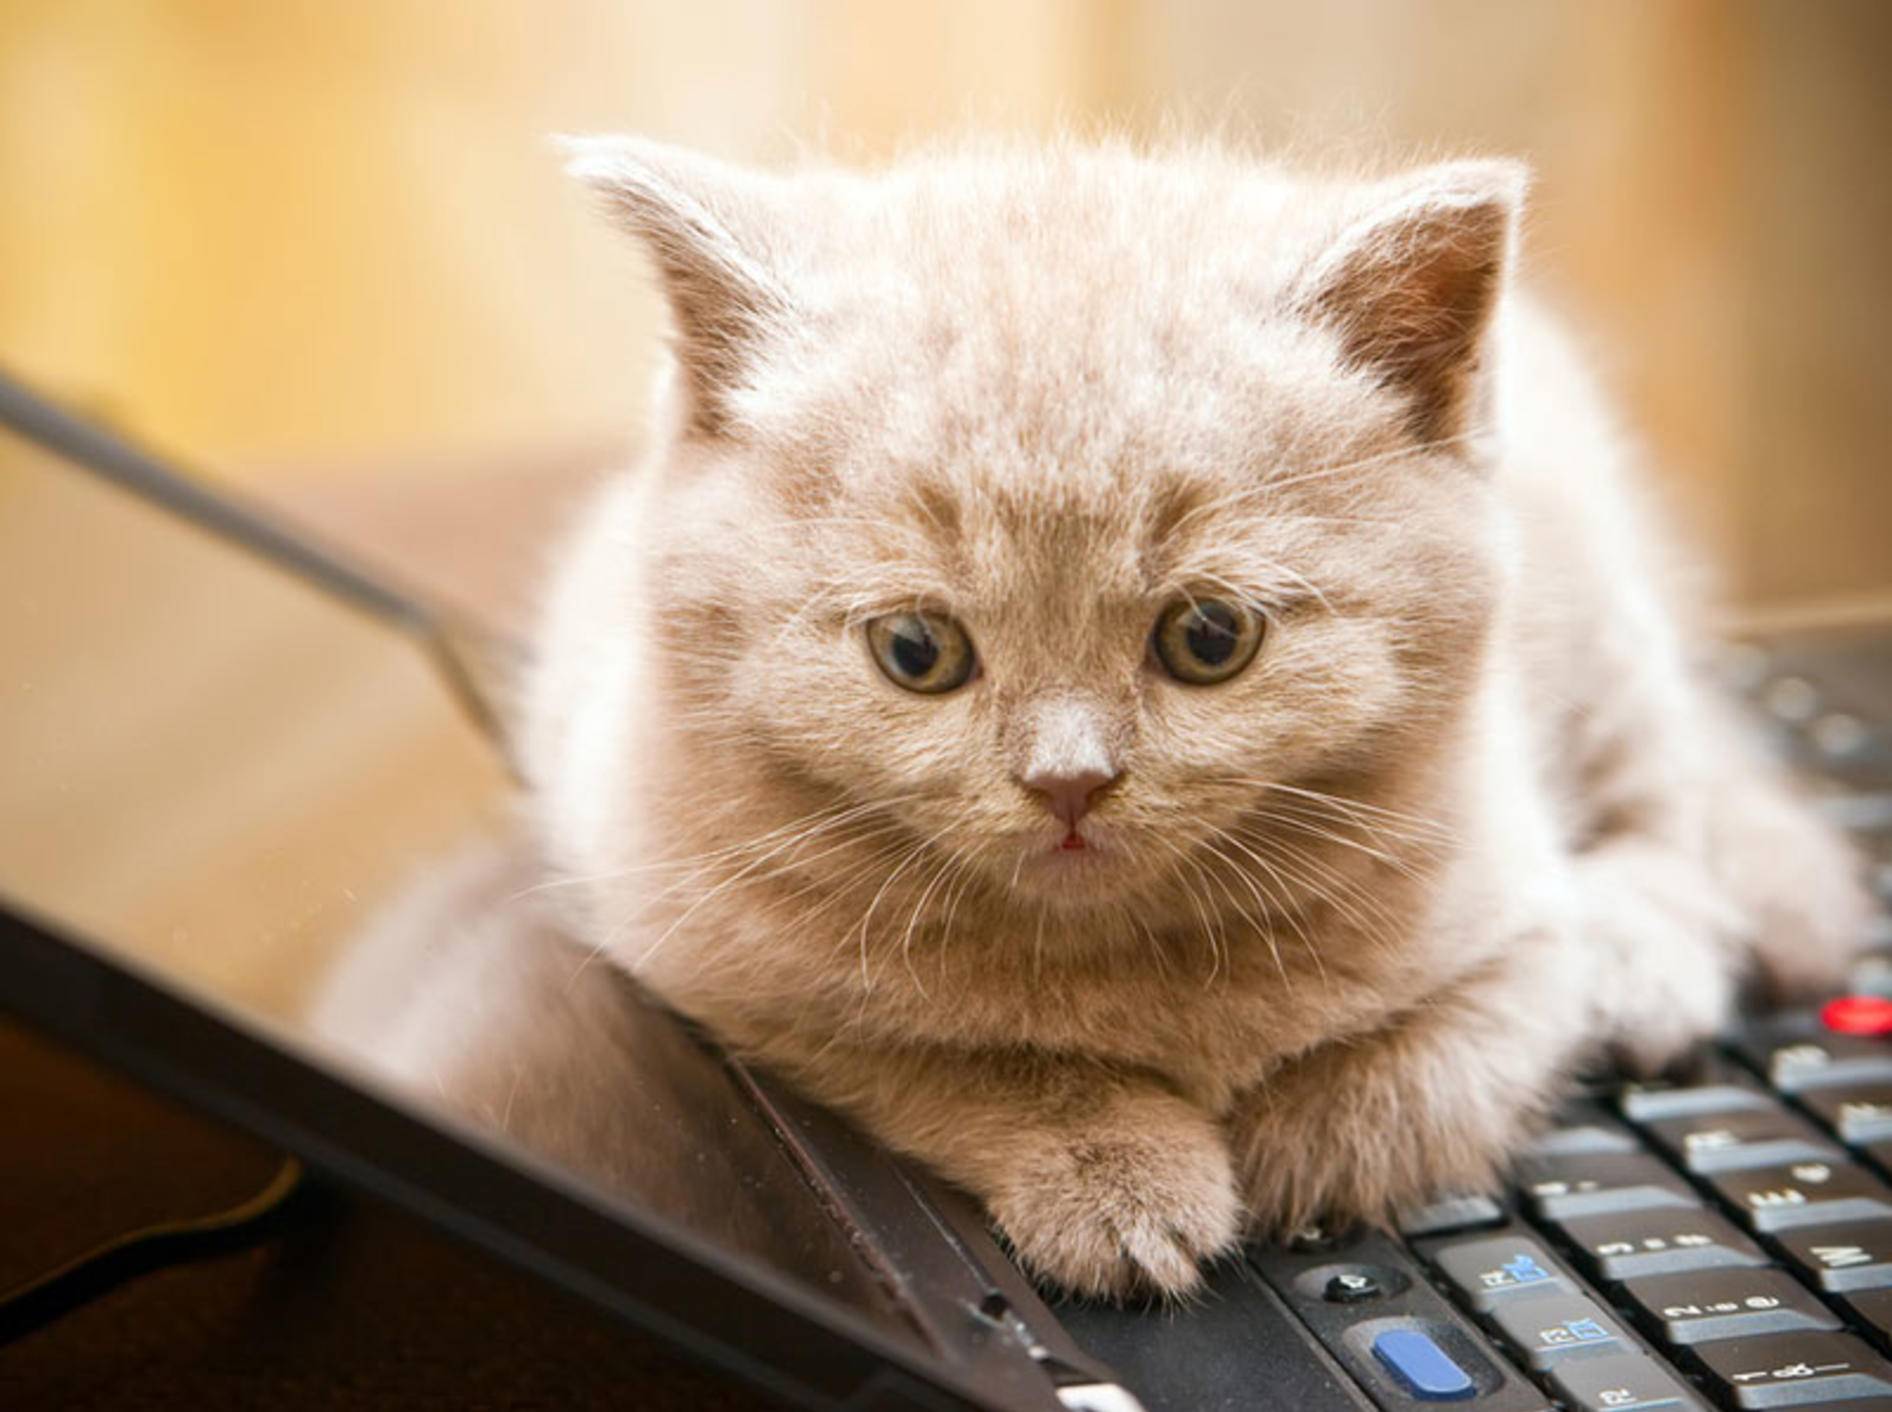 "Schenk mir die Aufmerksamkeit, nicht dem Laptop", scheint diese Britisch Kurzhaar sagen zu wollen – Shutterstock / Anna Lurye